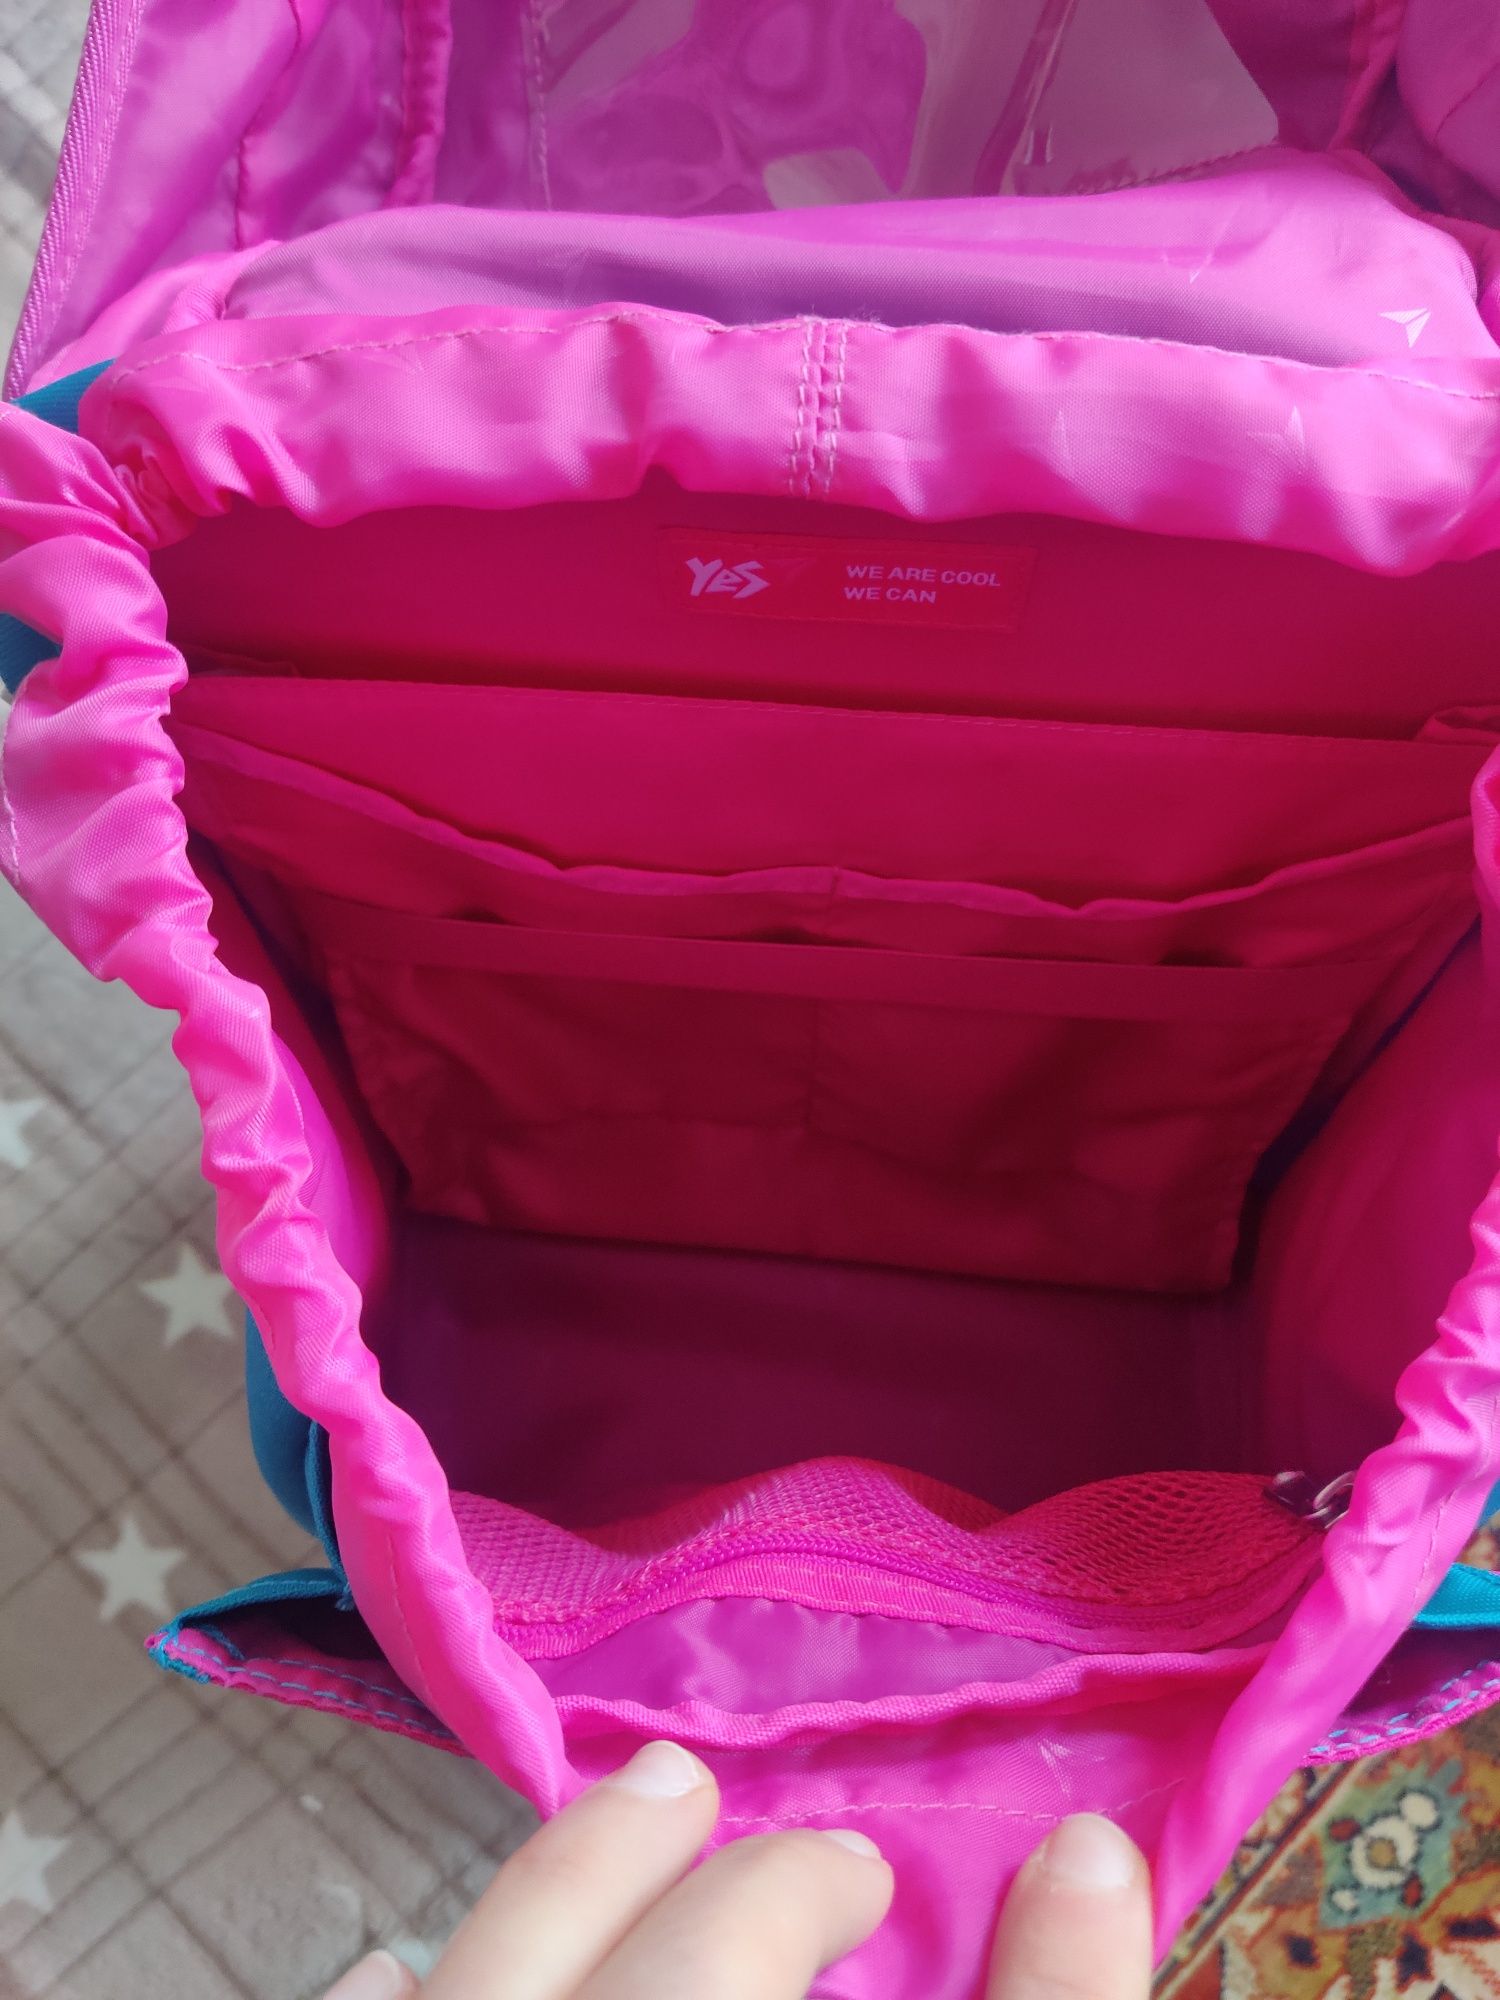 Рюкзак школьный для девочки новый!